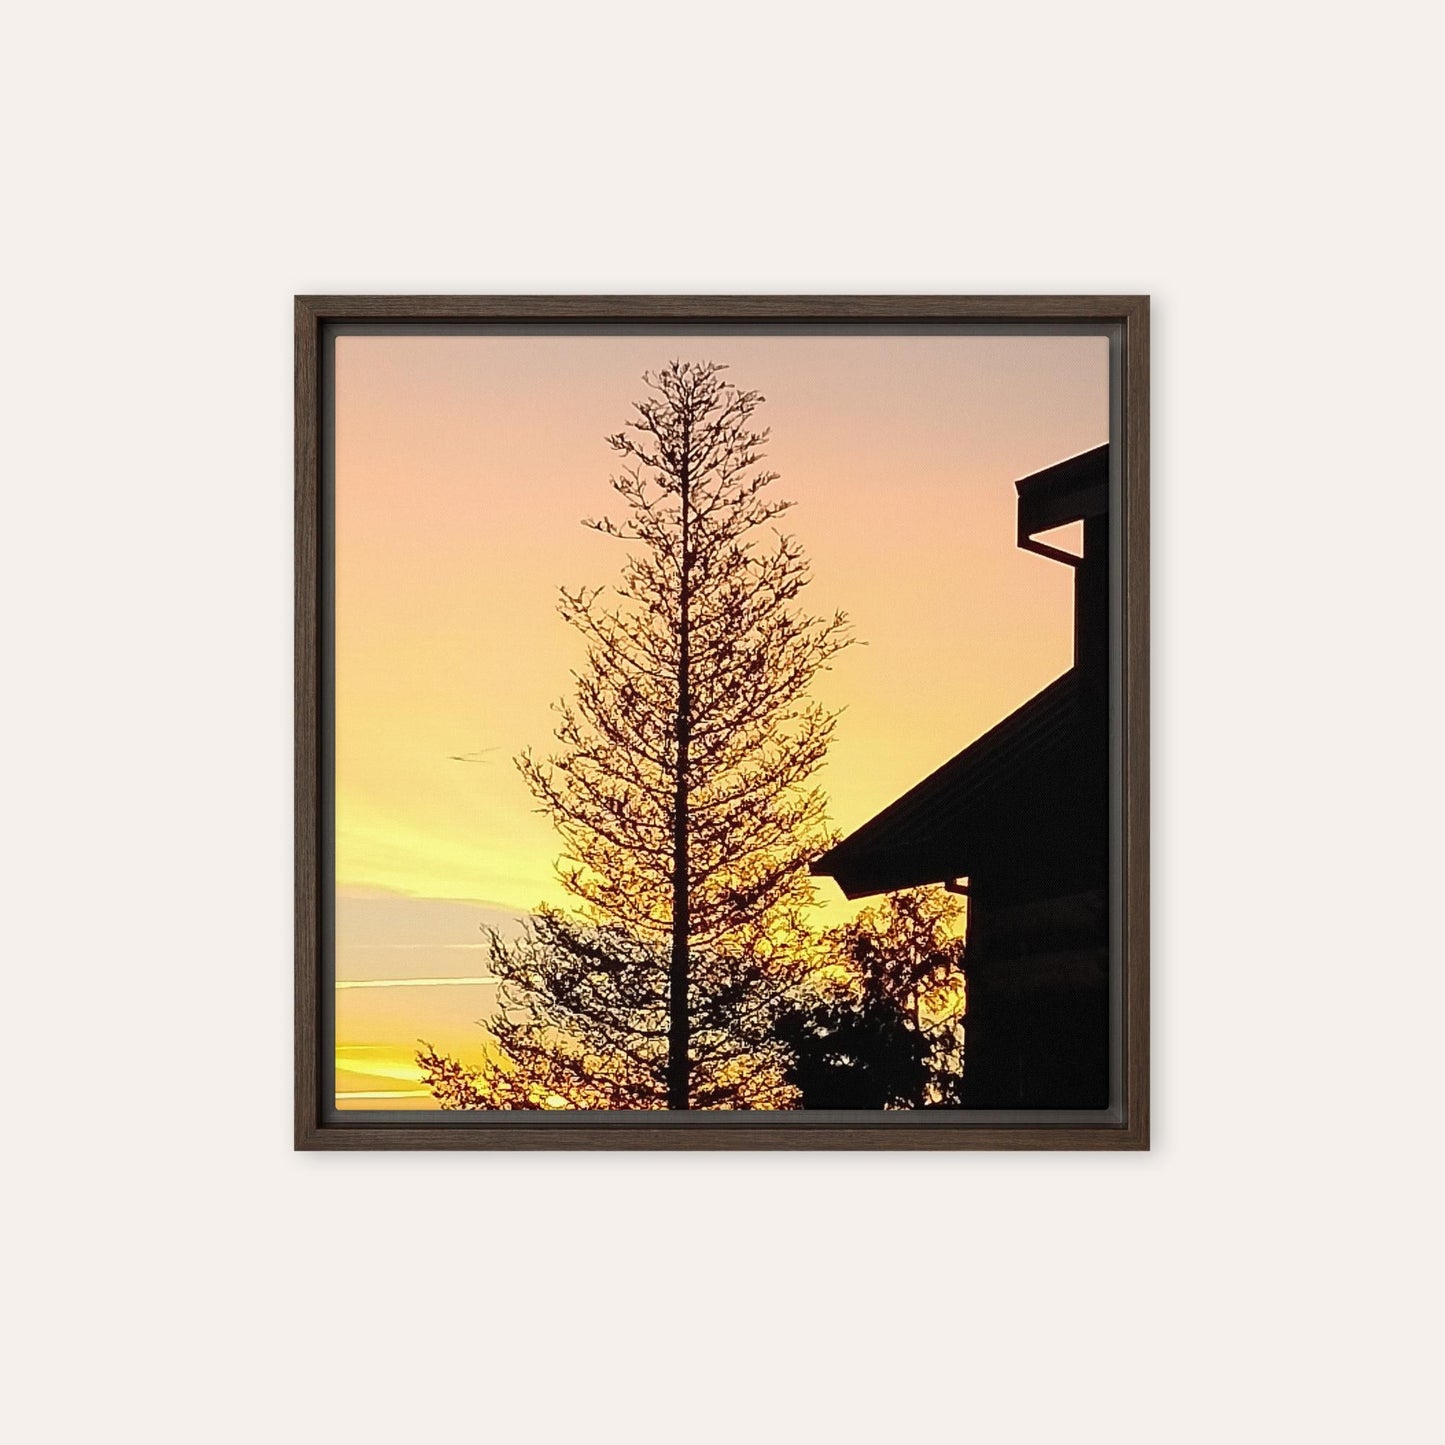 Big Pine Framed Print